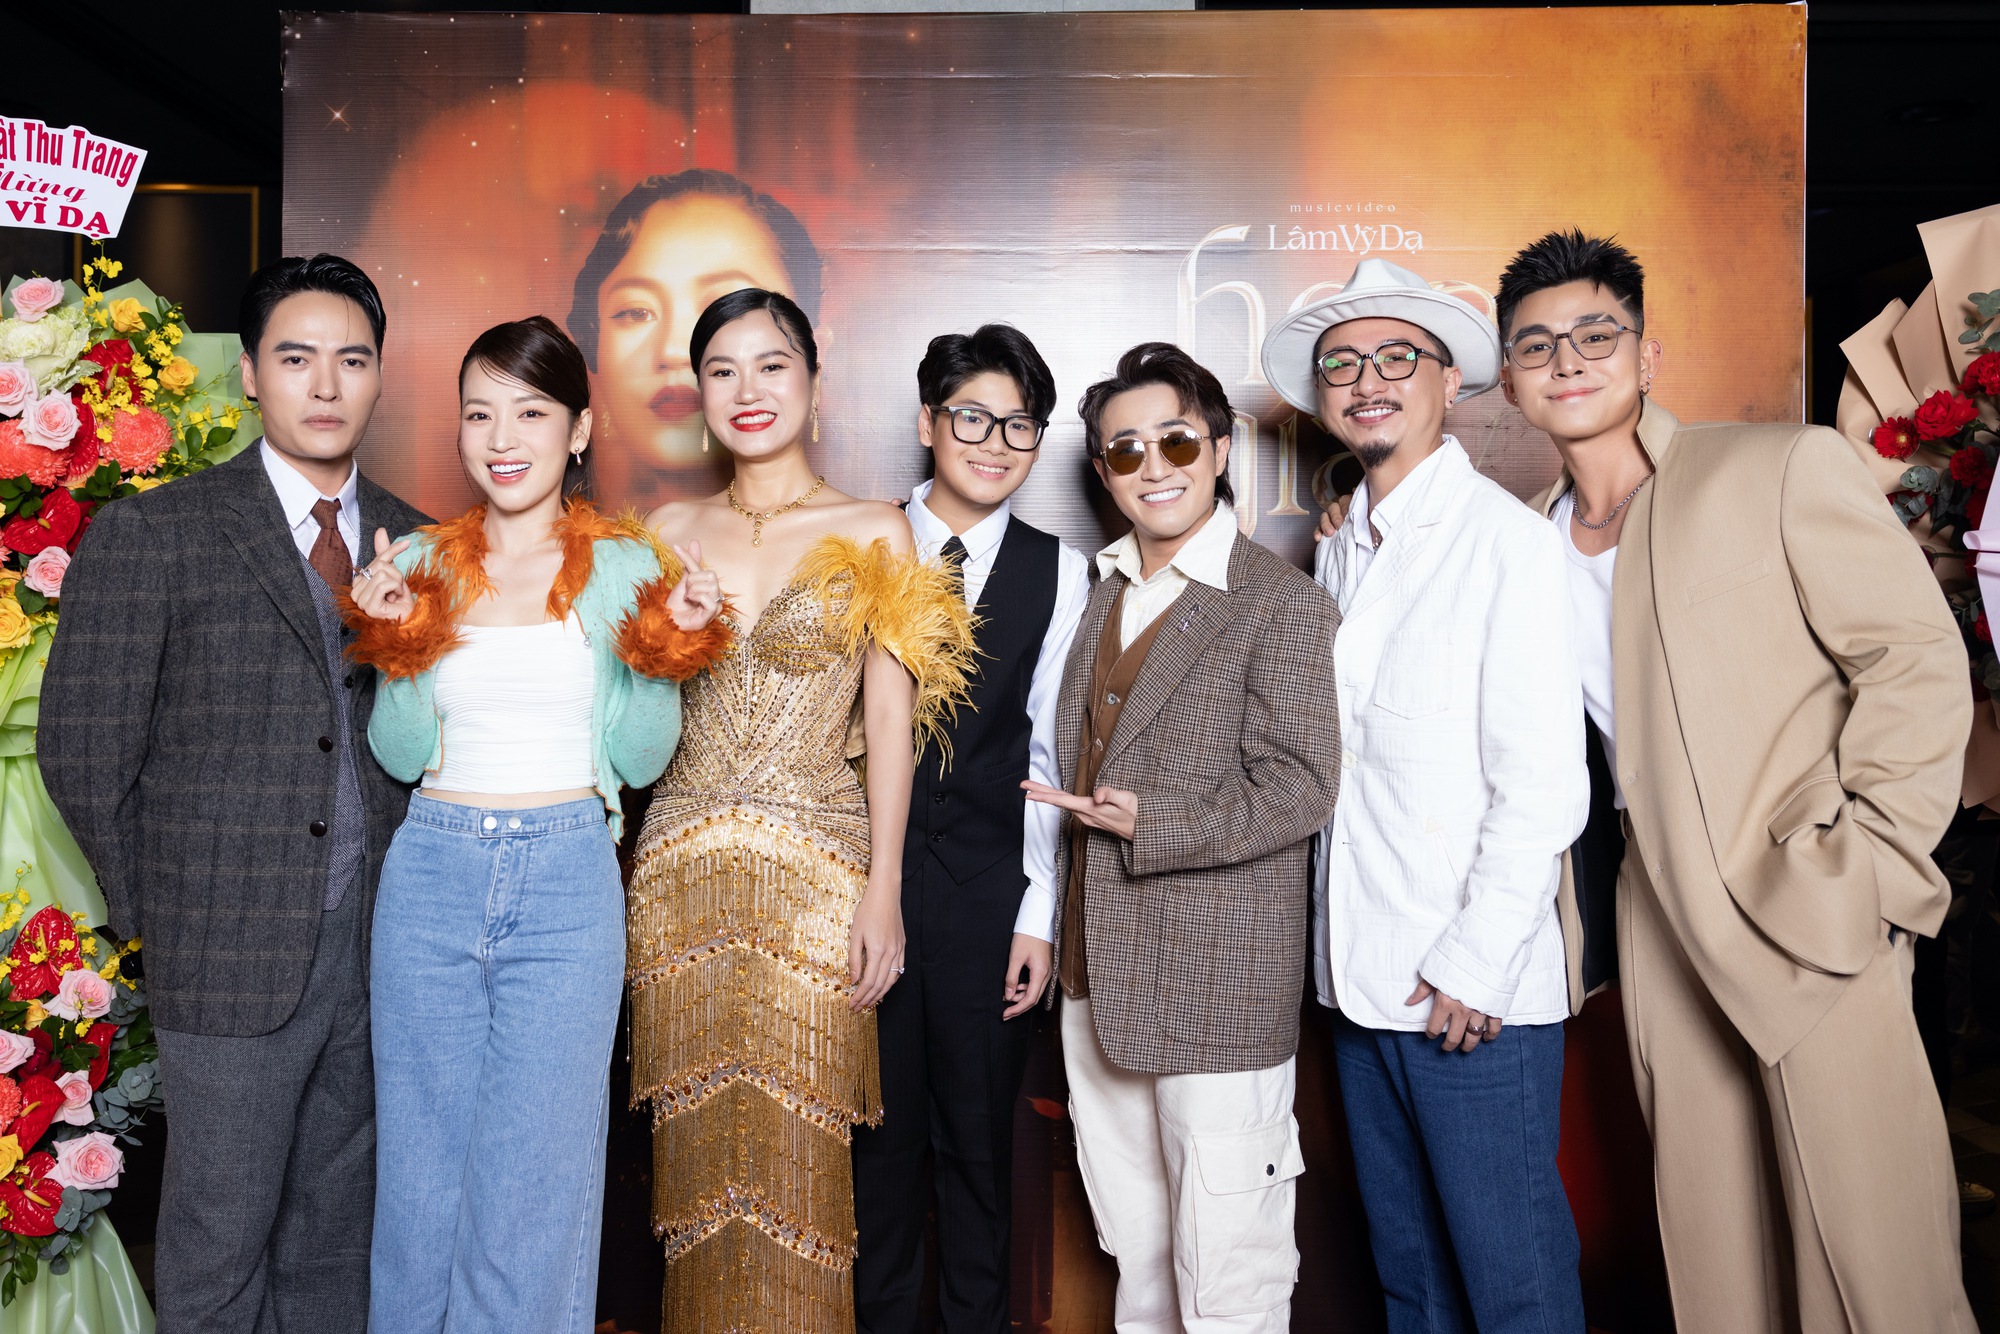 Khả Như, Lê Dương Bảo Lâm mừng Lâm Vỹ Dạ ra mắt MV tiền tỉ - Ảnh 2.